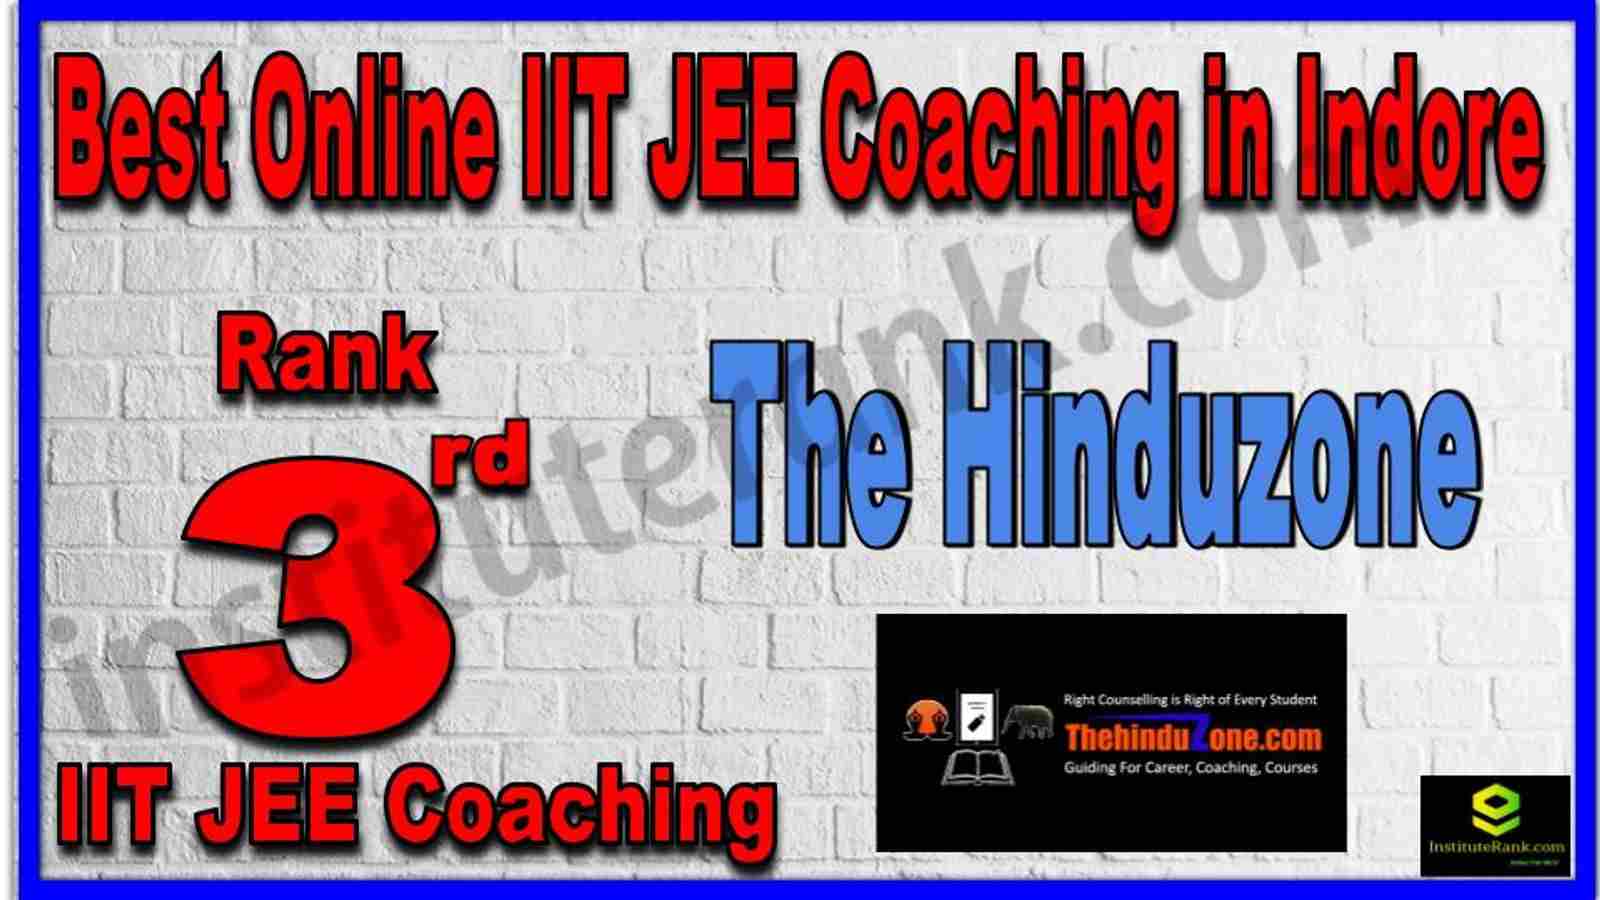 Rank 3rd Best Online IIT JEE Coaching in Indore